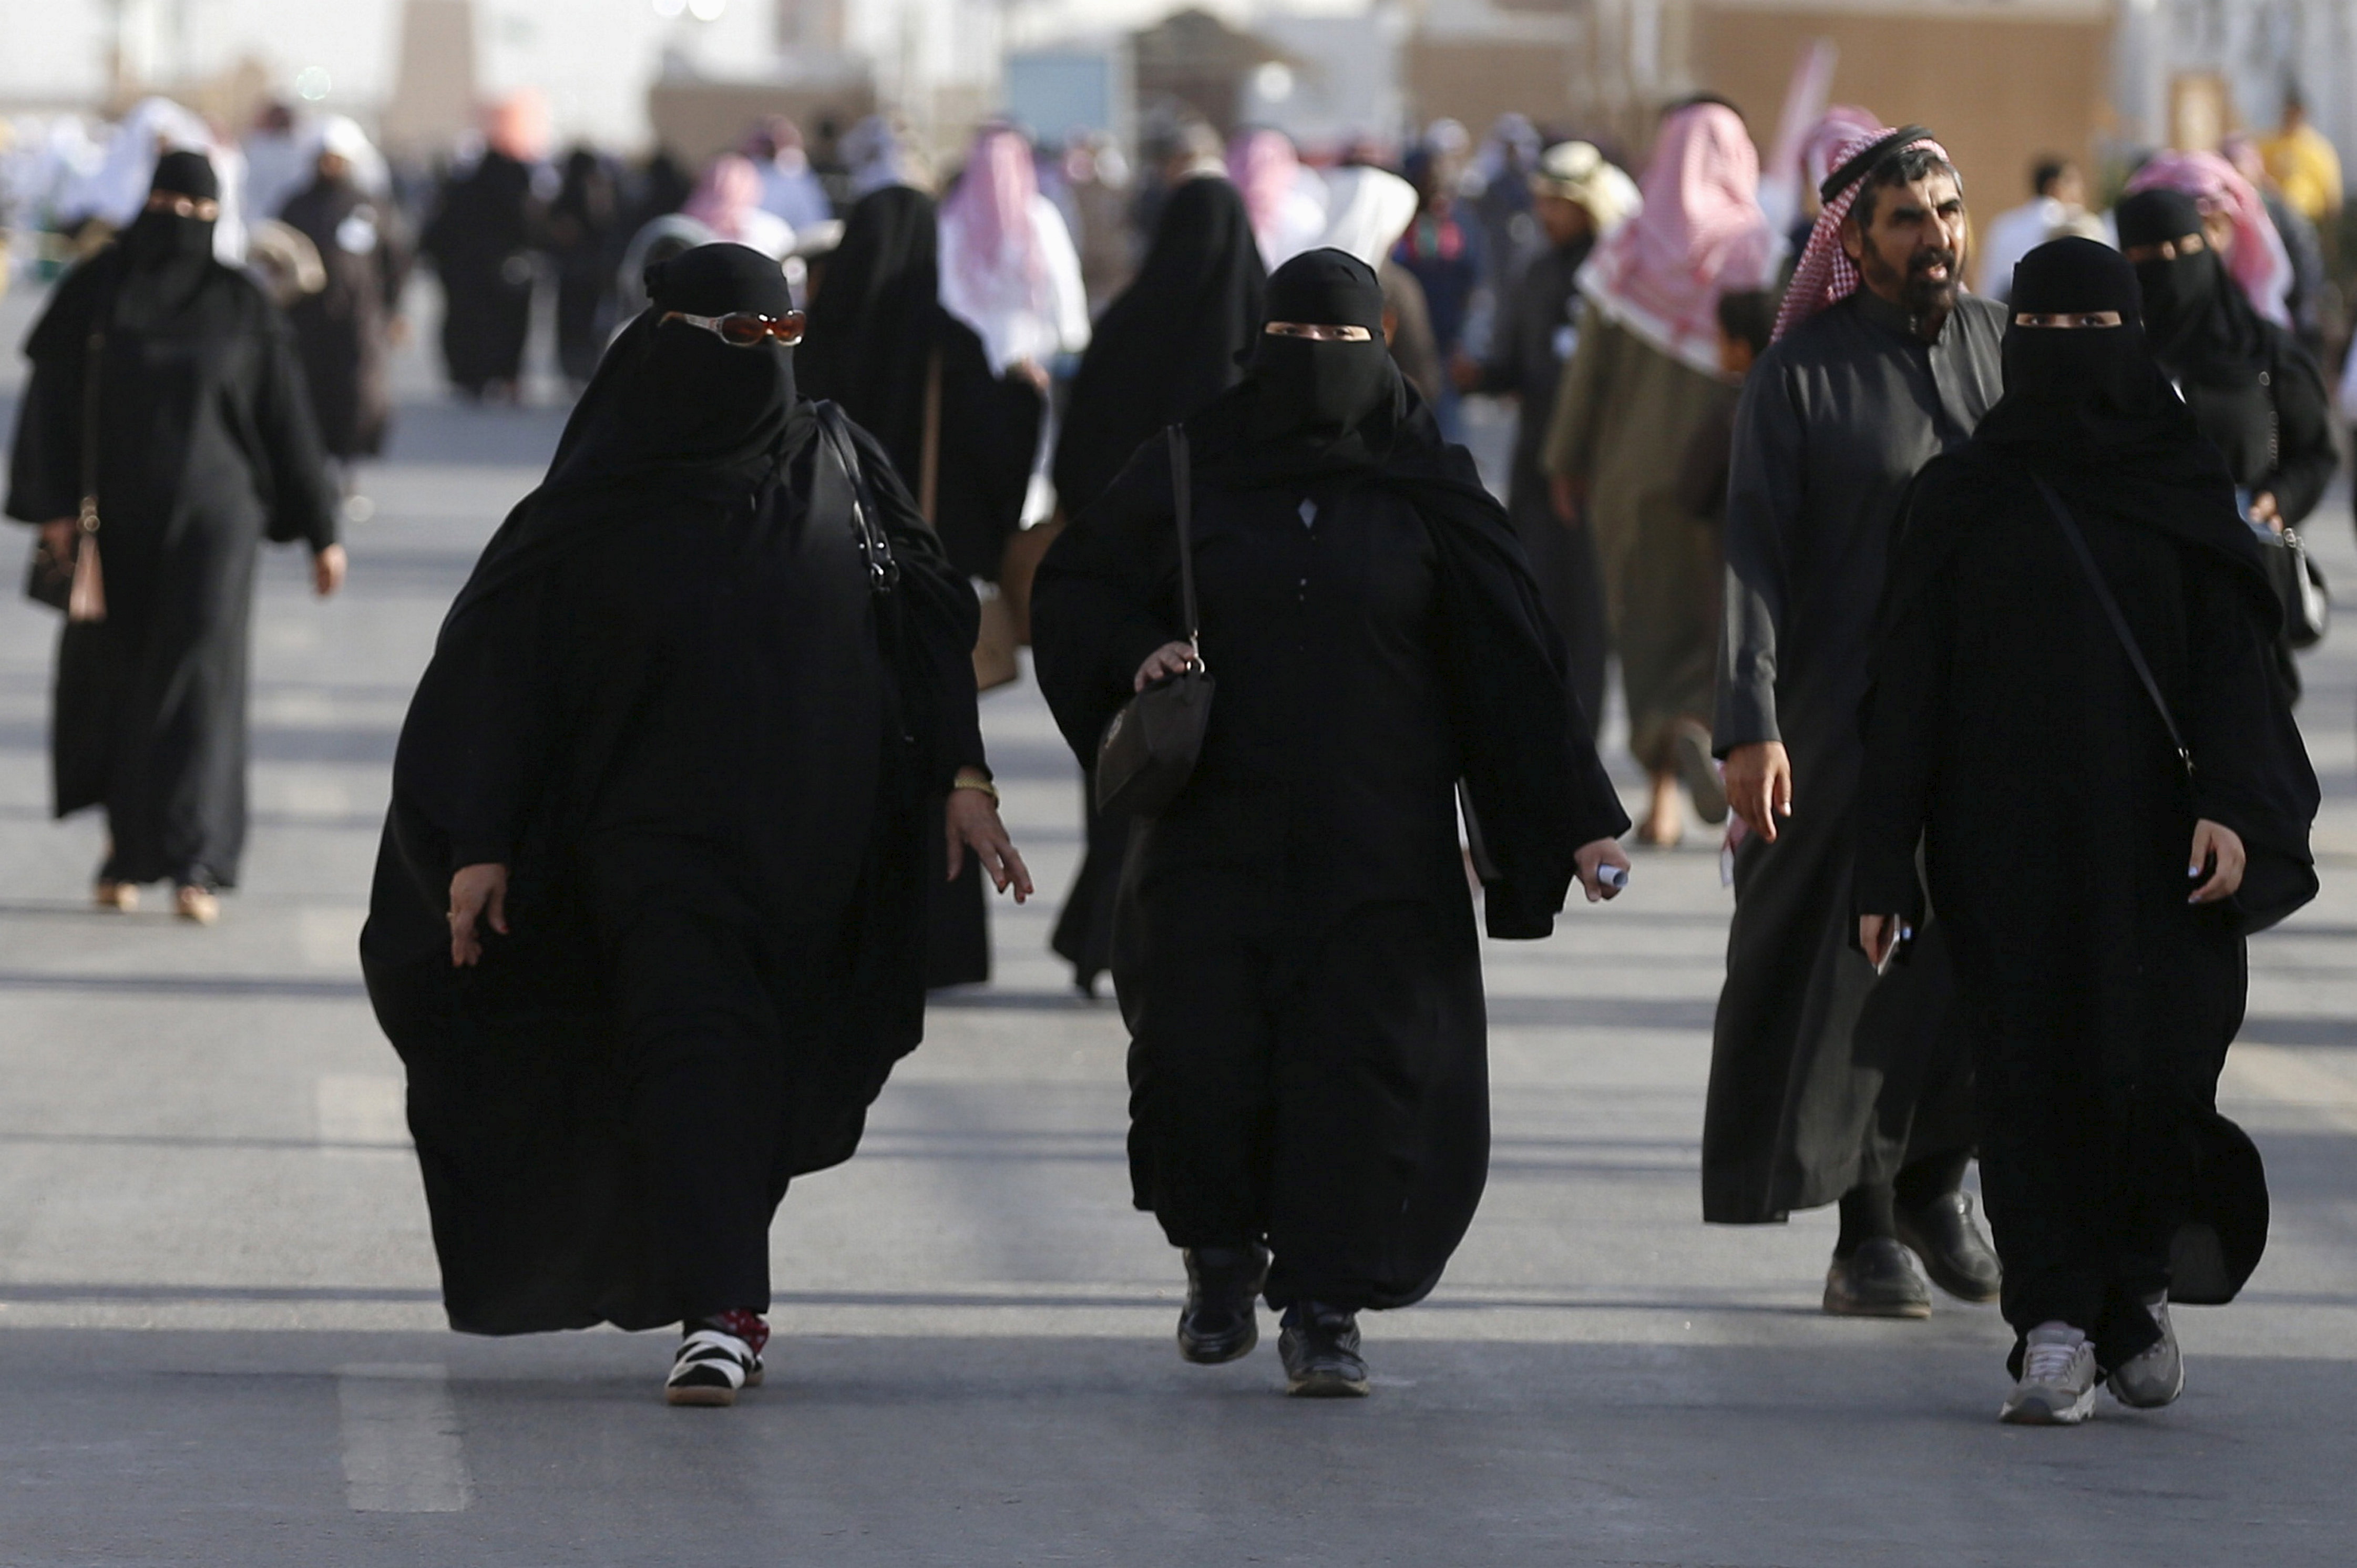 بن سلمان: المرأة السعودية غير مجبرة على ارتداء غطاء رأس أوعباءة سوداء...لهن حق اختيار ارتداء العباءة